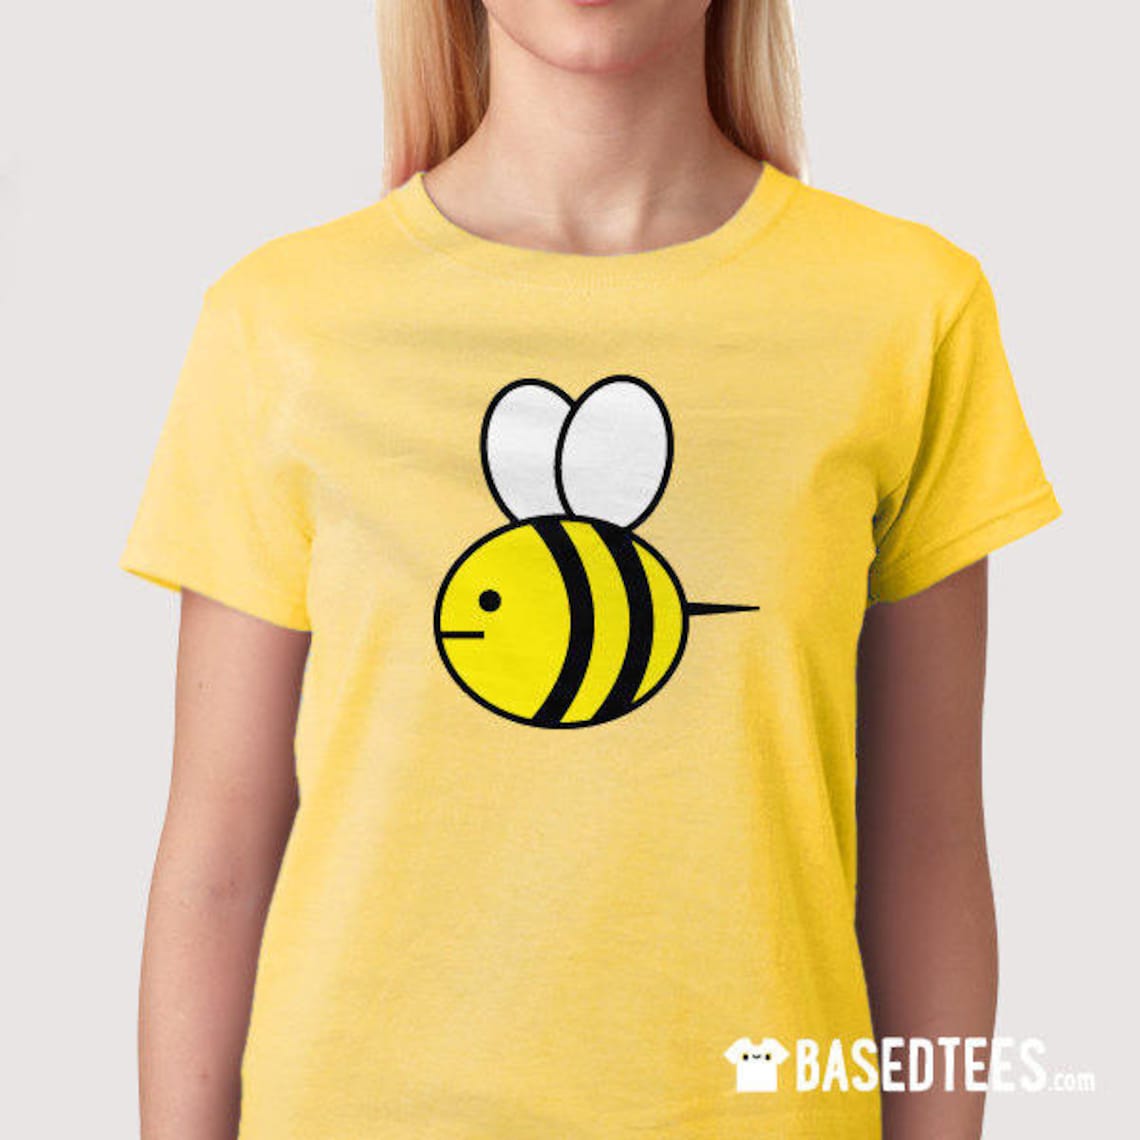 Bee Sweatshirt or T-shirt - Etsy